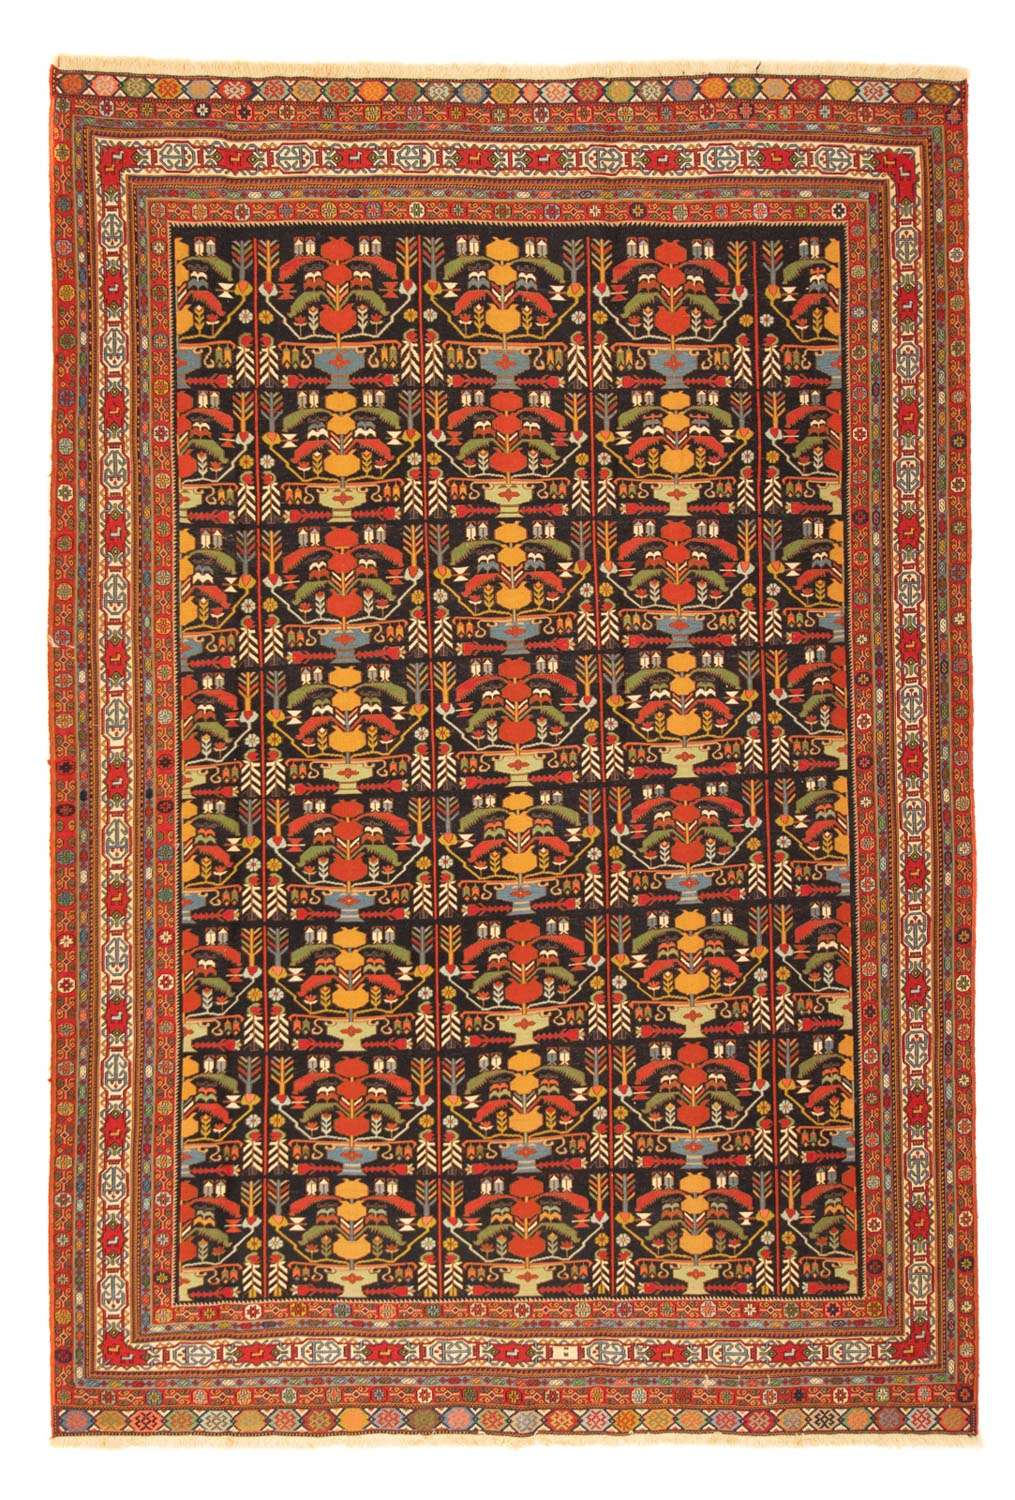 Tapete Persa - Nomadic - 284 x 195 cm - multicolorido